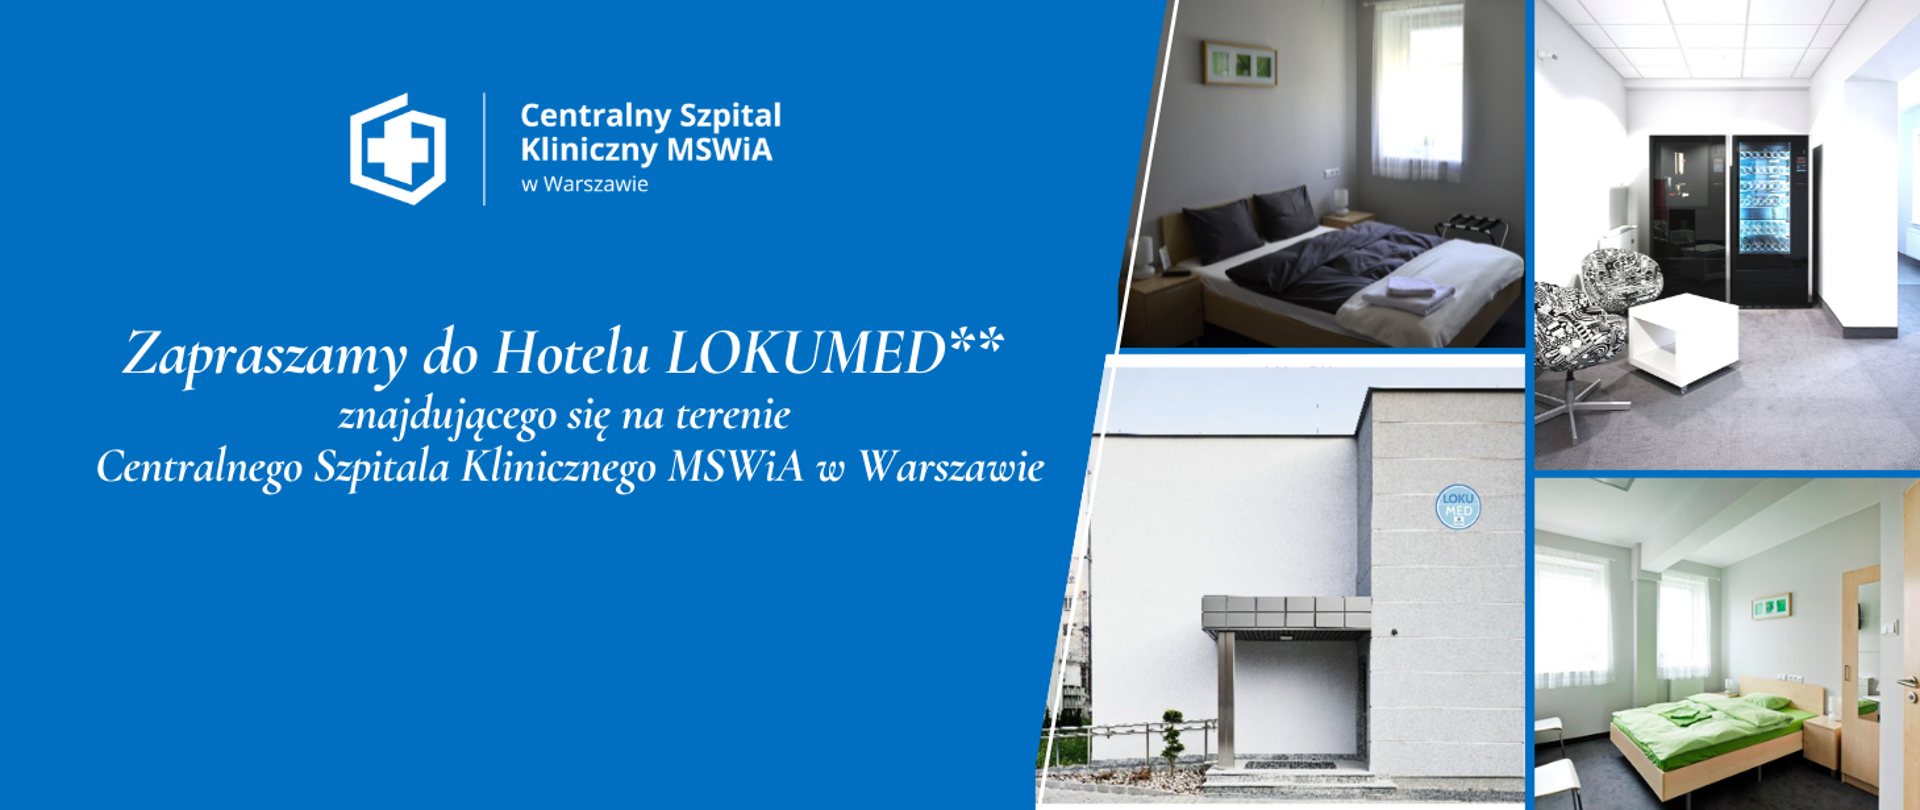 Zapraszamy Państwa do Hotelu LOKUMED** znajdującego się na terenie Centralnego Szpitala Klinicznego MSWiA w Warszawie budynku „O”.
